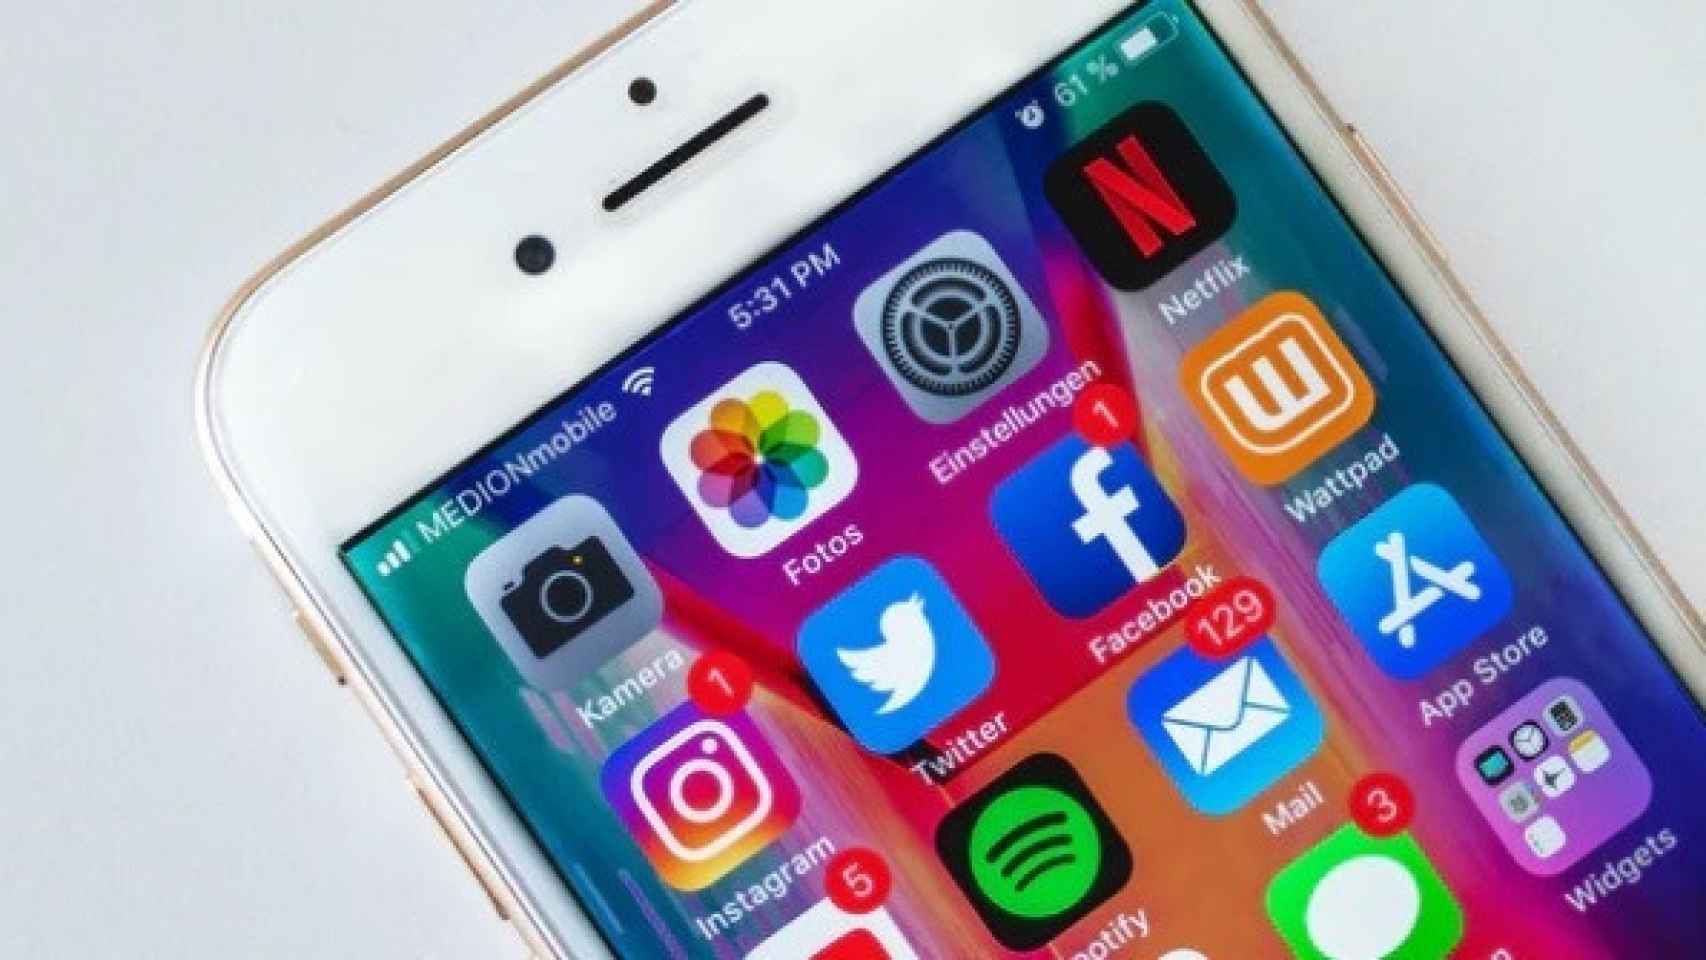 Aplicaciones de Netflix, Spotify, Facebook, Twitter o Instagram, entre otras, en la pantalla de un teléfono móvil.